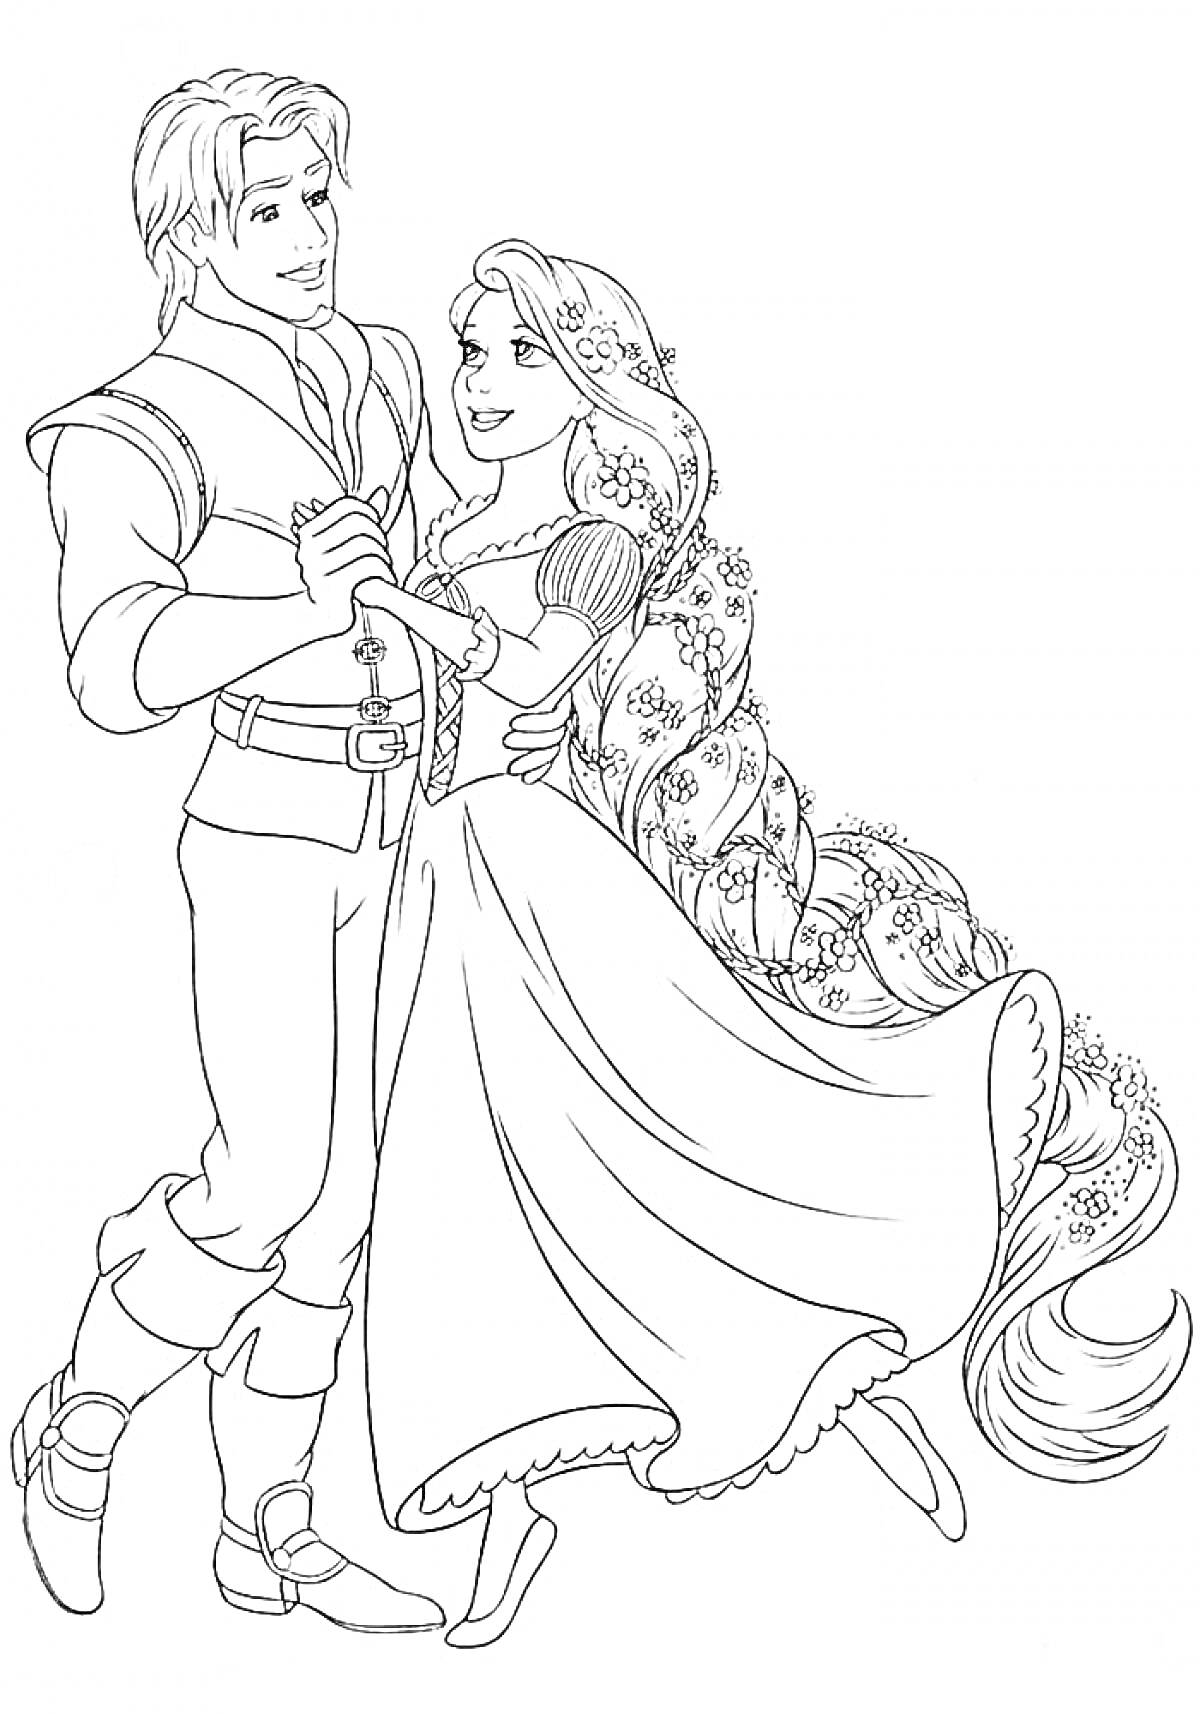 Раскраска Принцесса с длинными волосами и принц, танцующие в танце